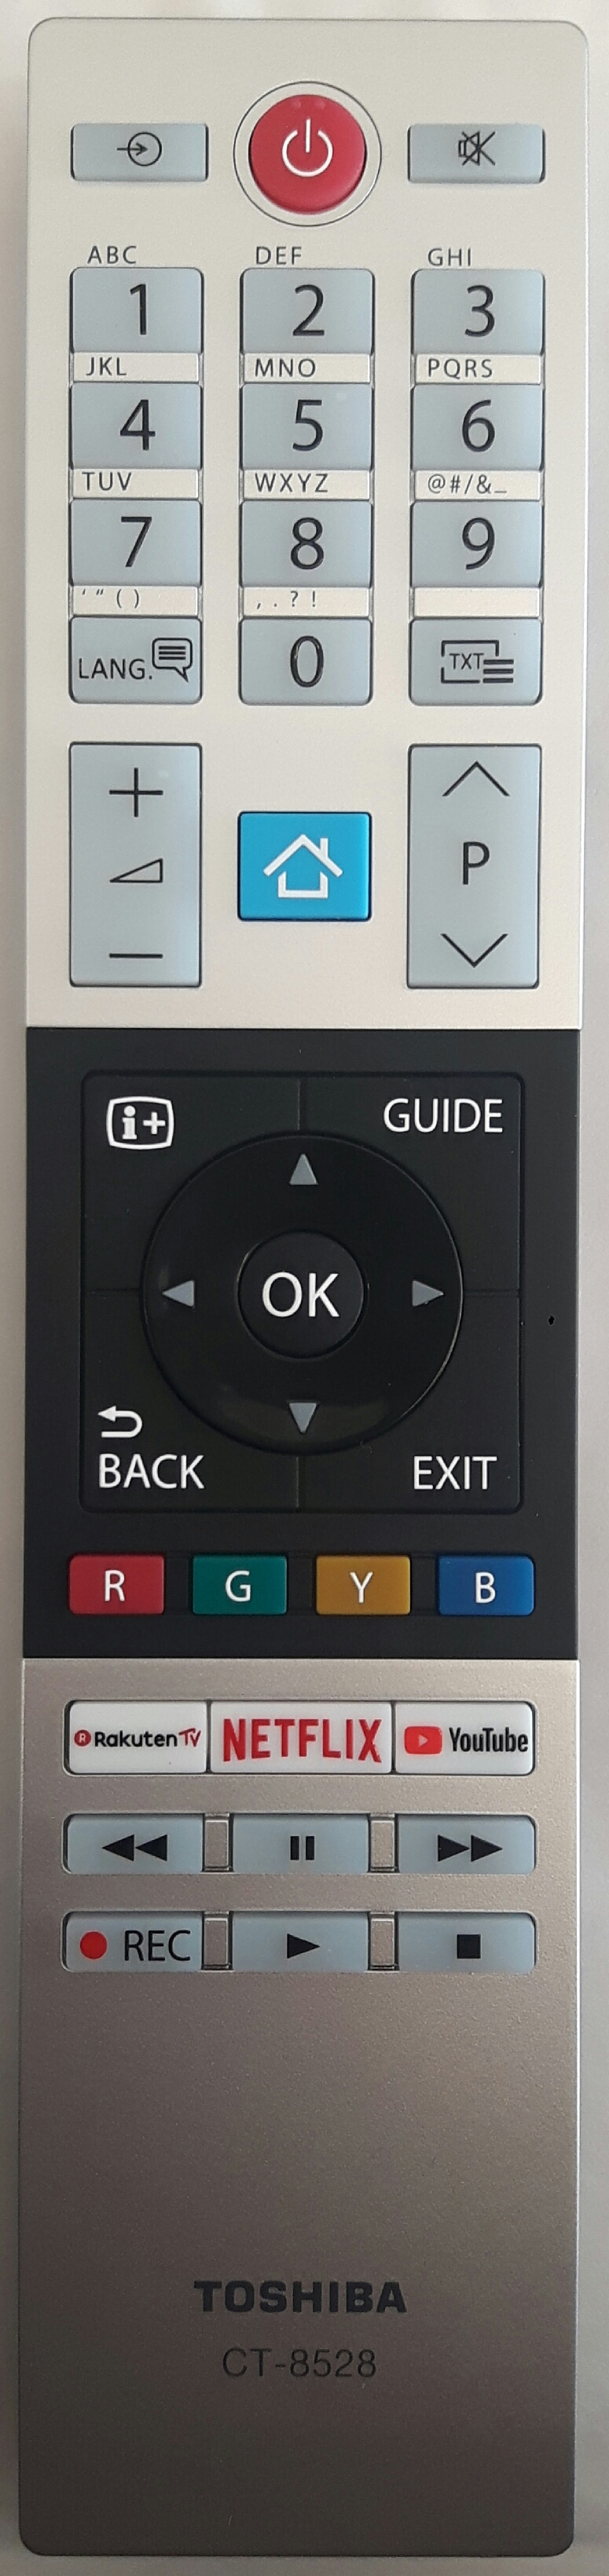 TOSHIBA 10120568 Remote Control Original 